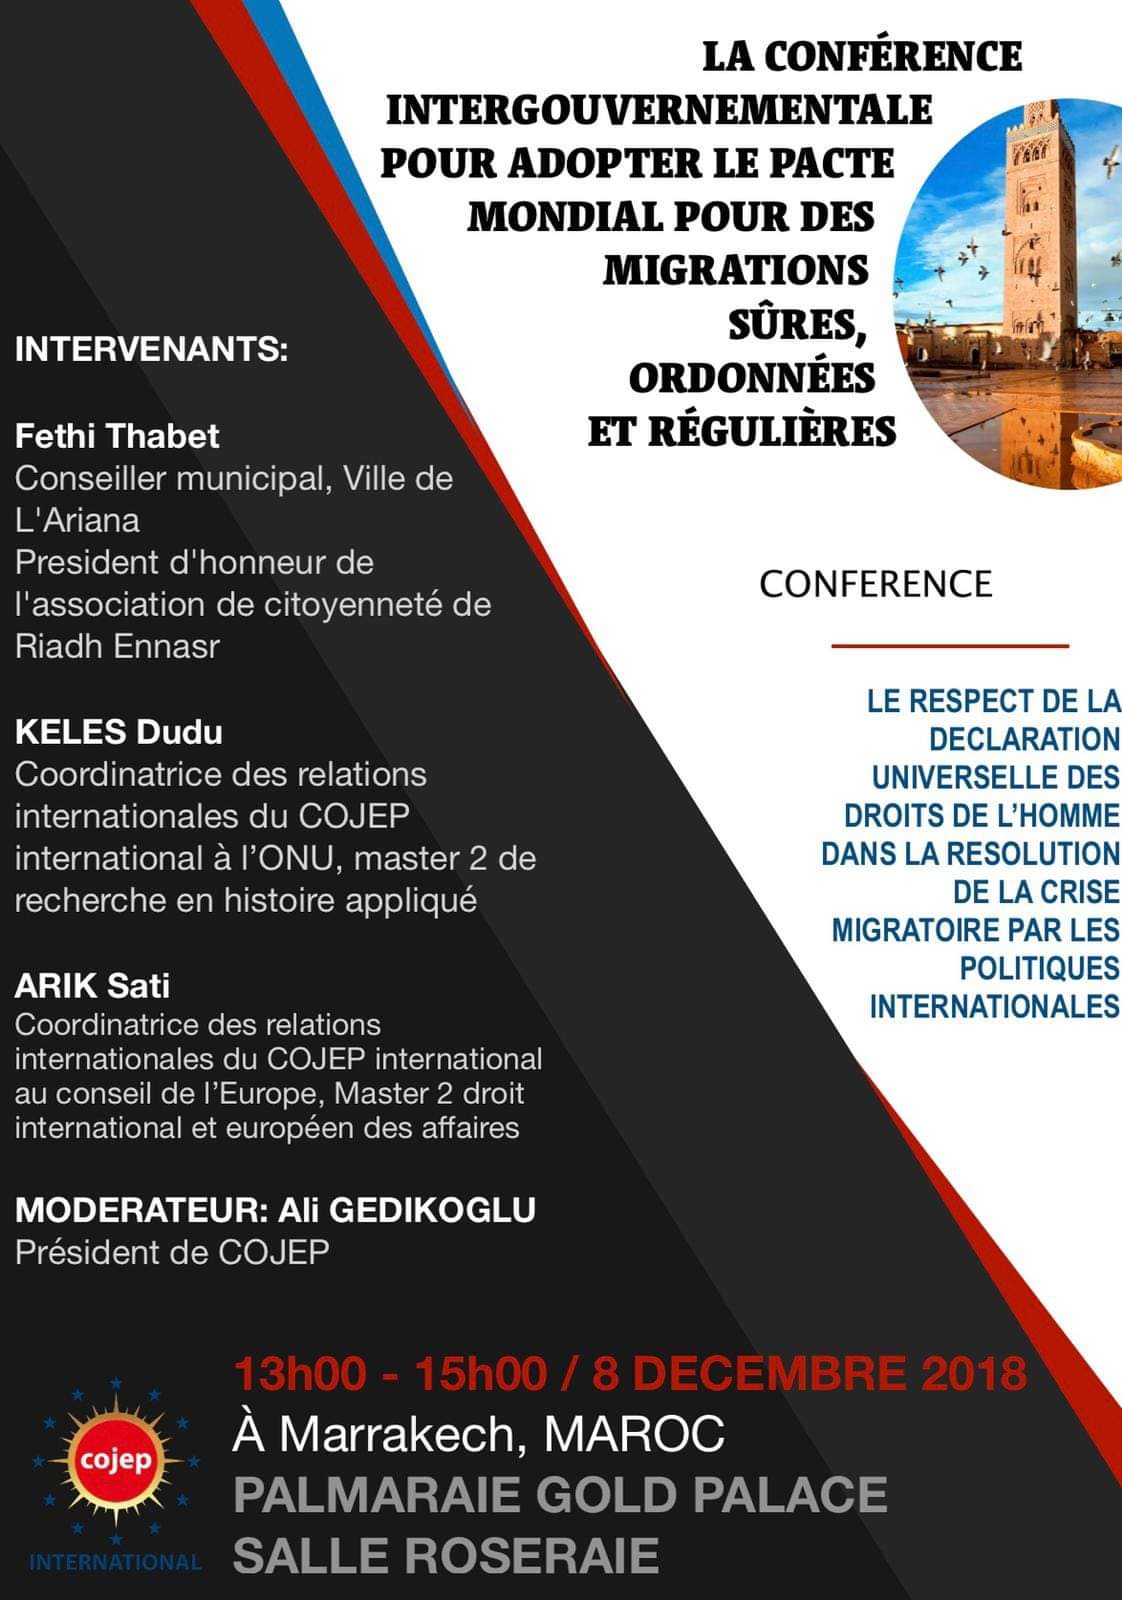 ONU/Conférence : le respect de la déclaration des Droits de l’homme (crise migratoire)